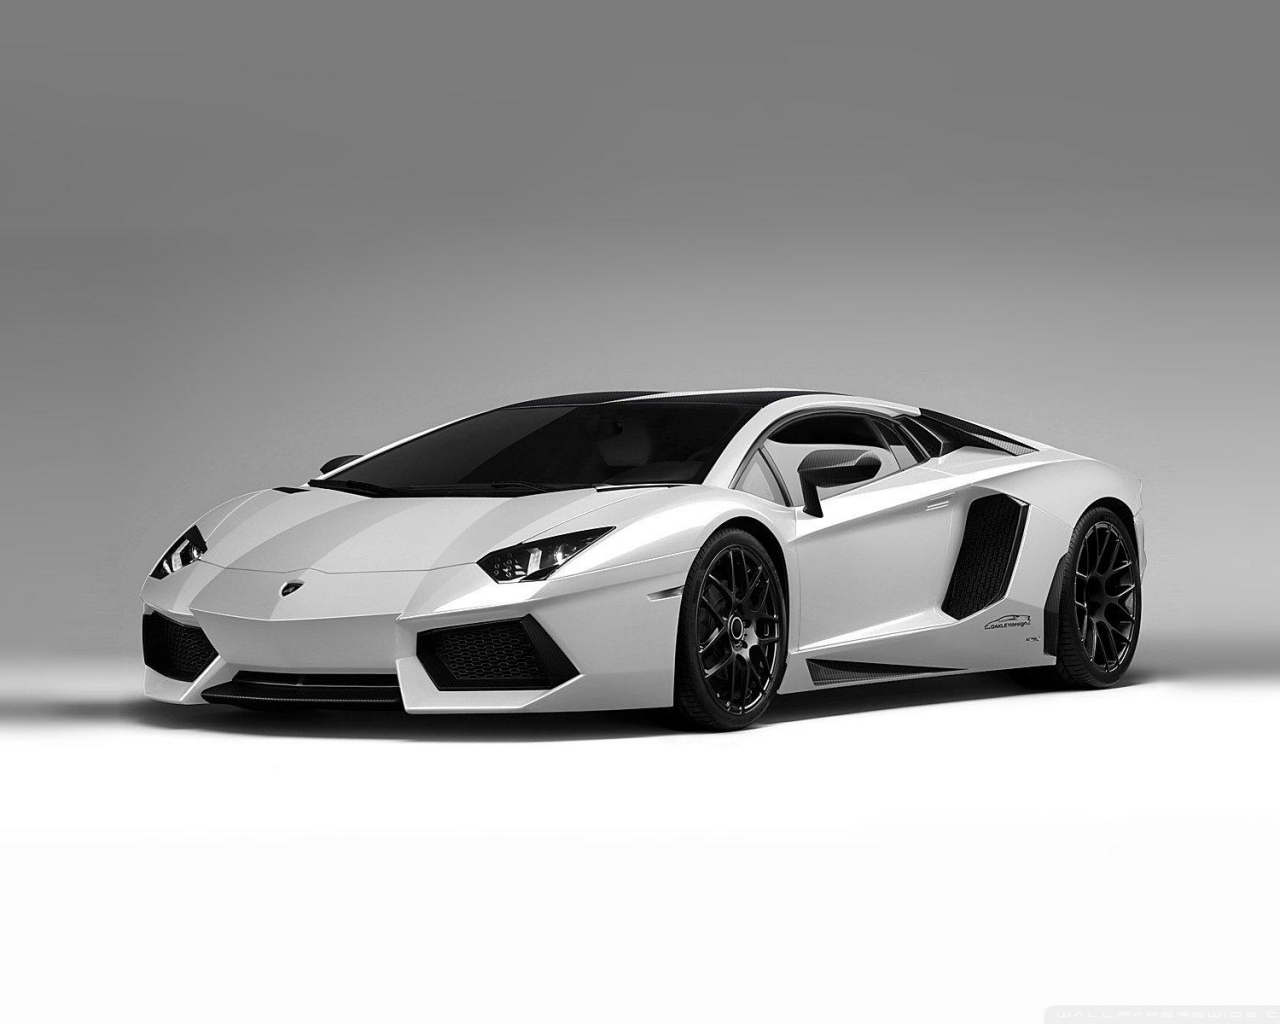 70+] White Lamborghini Wallpaper - WallpaperSafari